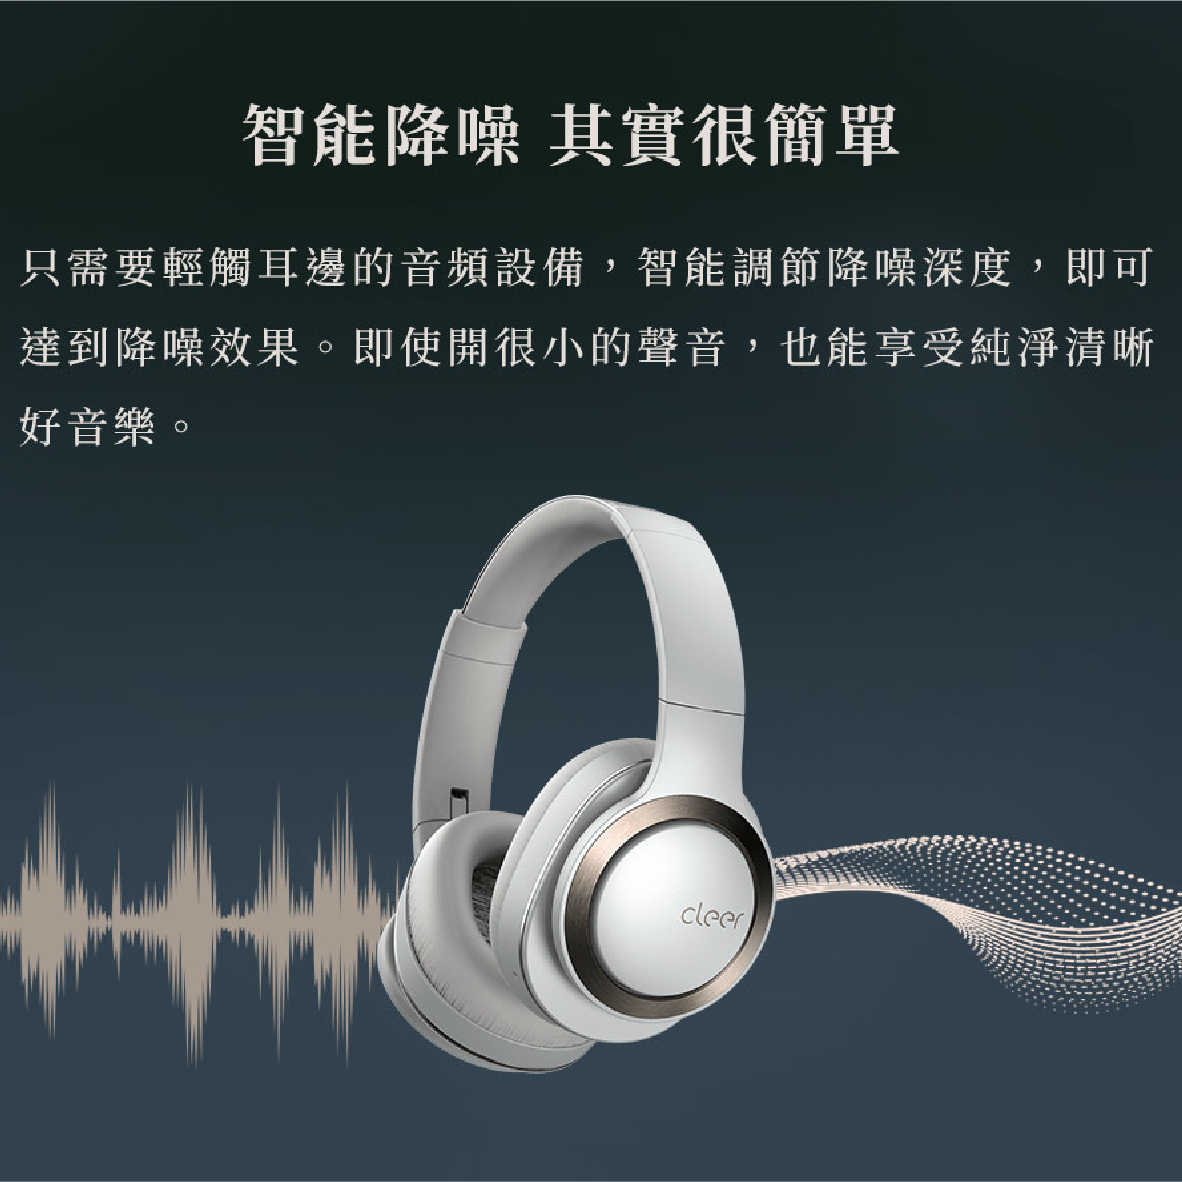 Cleer Enduro ANC 智能降噪 Hi-Res 雙麥通話 藍牙 耳罩式 耳機 | My Ear耳機專門店